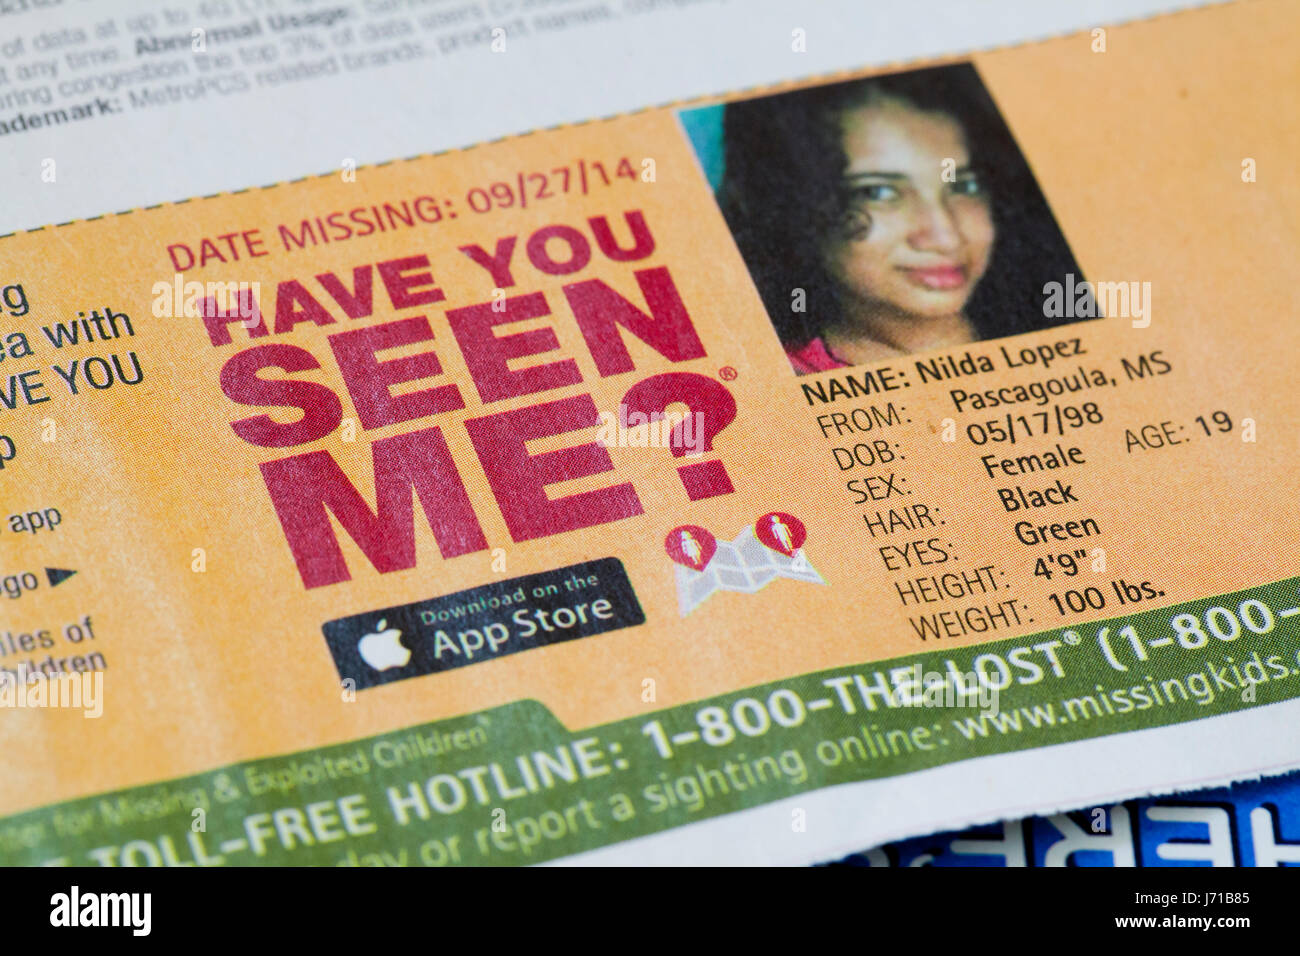 Me has visto anuncios de chica desaparecida (niños desaparecidos, niños perdidos, desaparecidos, los desaparecidos) - EE.UU. Foto de stock